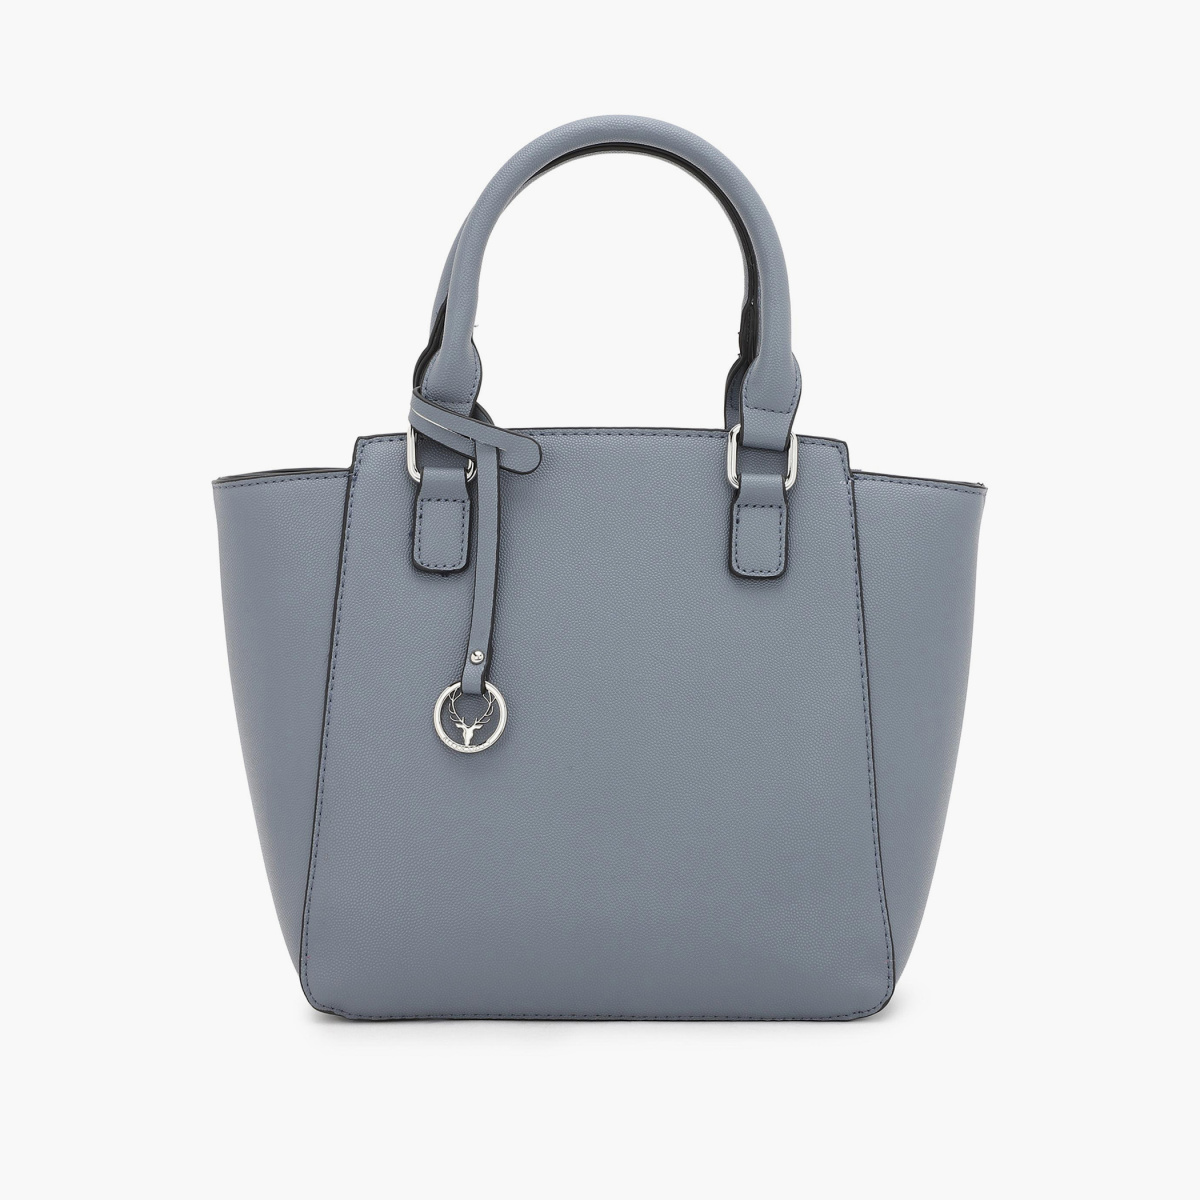 Buy Women Brown Casual Sling Bag Online - 760287 | Allen Solly